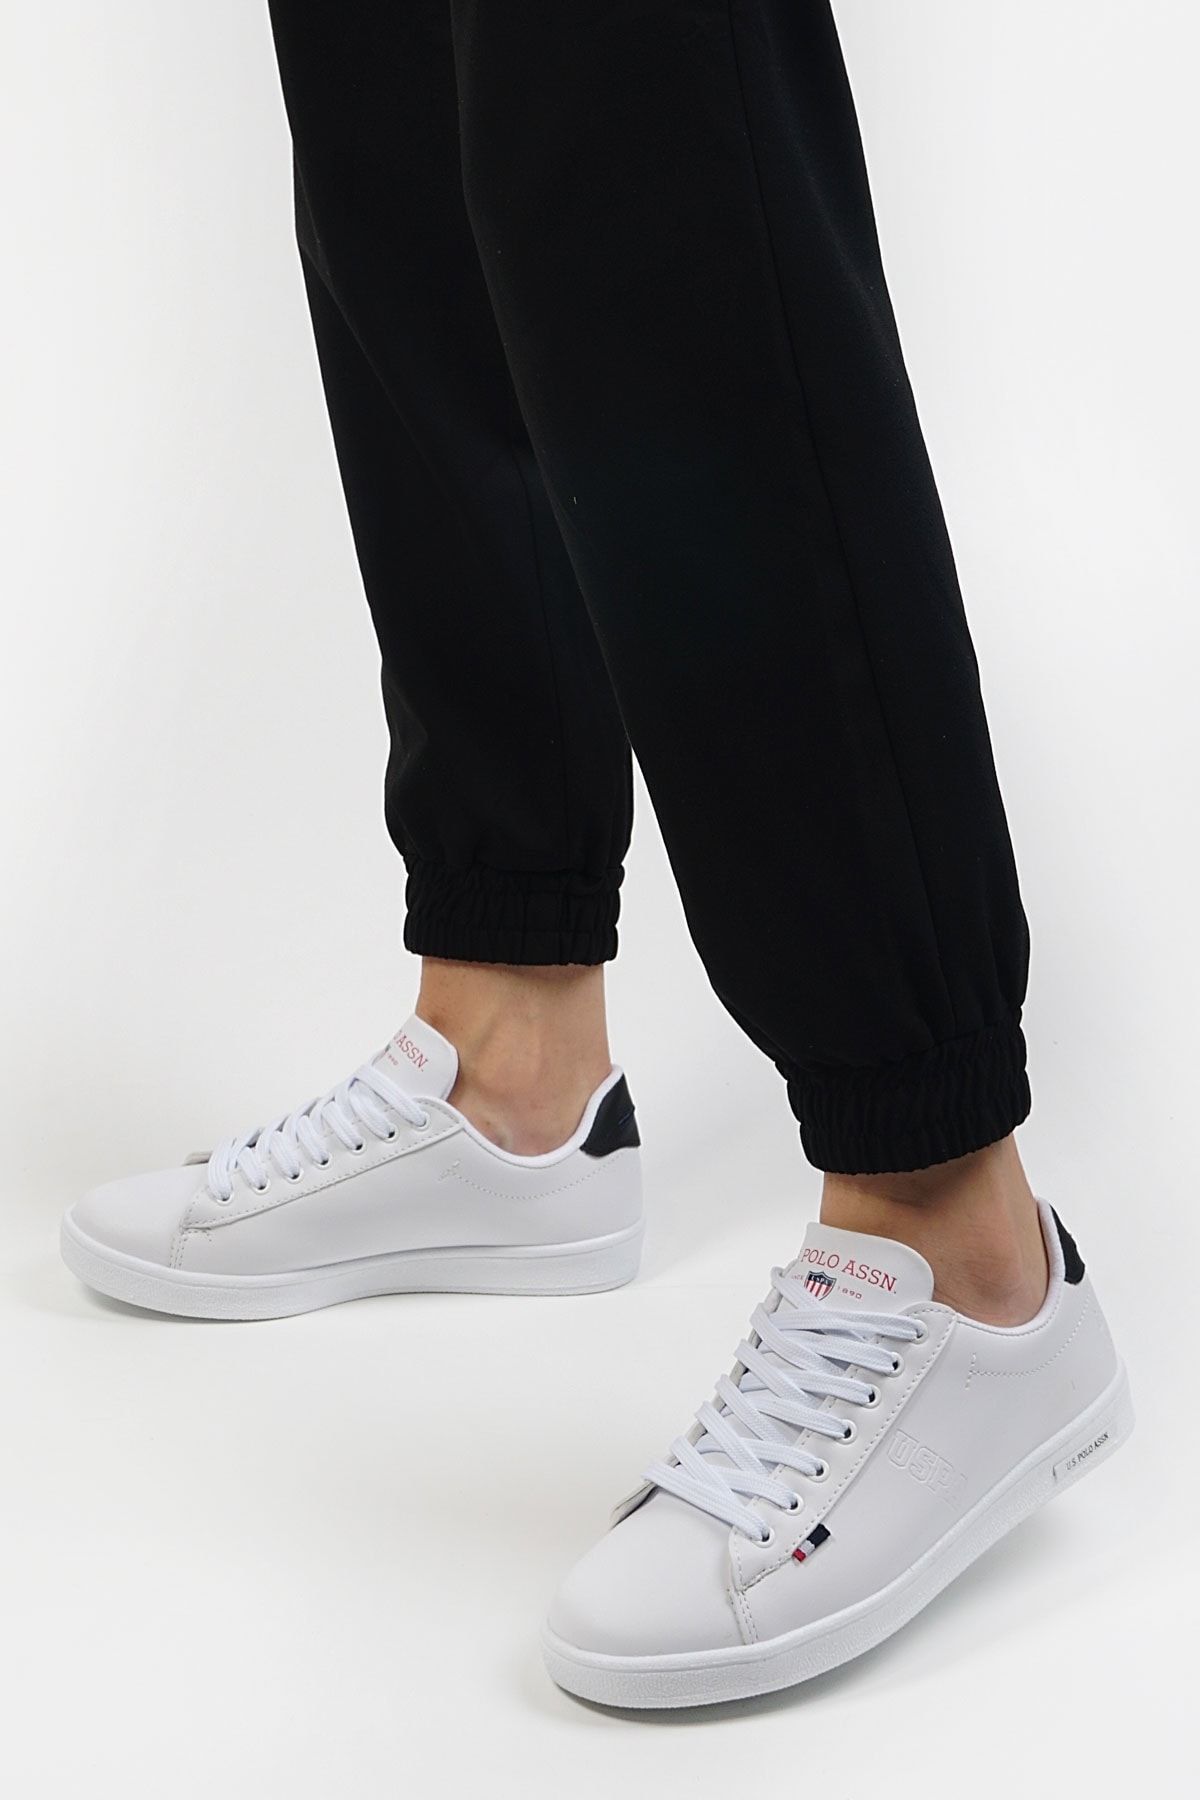 U.S. Polo Assn. Franco Beyaz Siyah Kadın Sneaker Ayakkabı 100367476